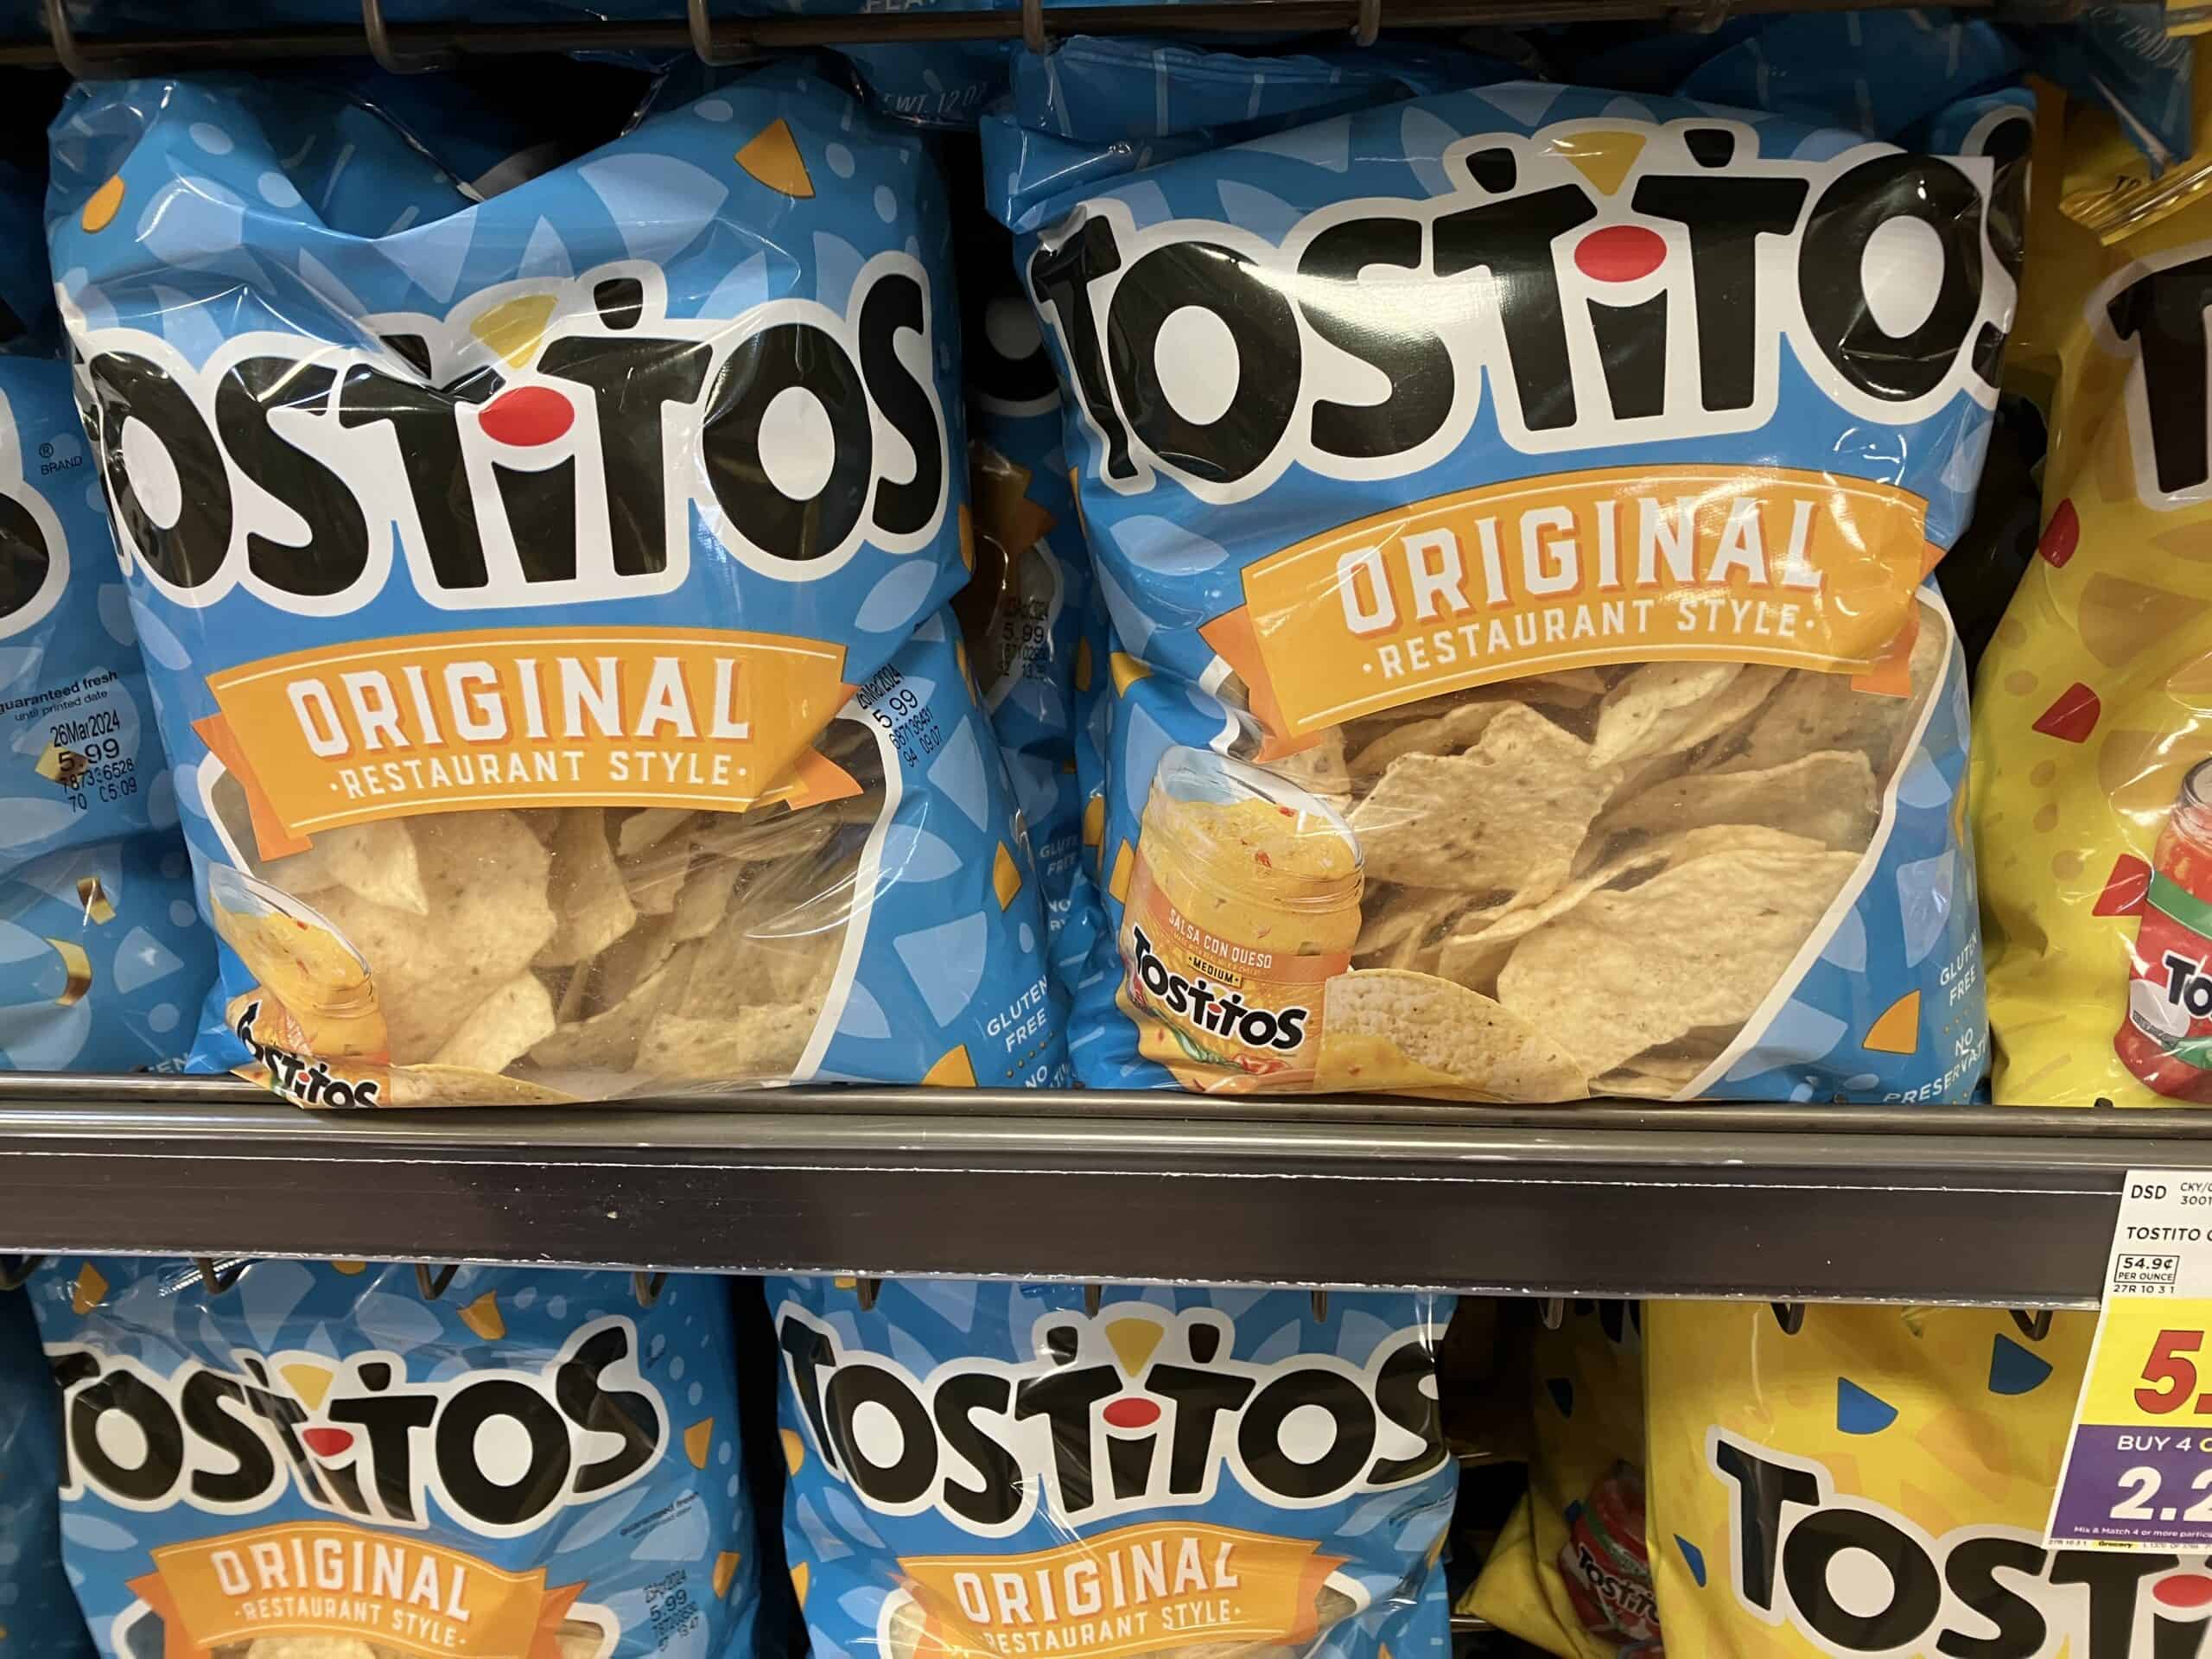 Tostitos Original Restaurant Style tortilla chips